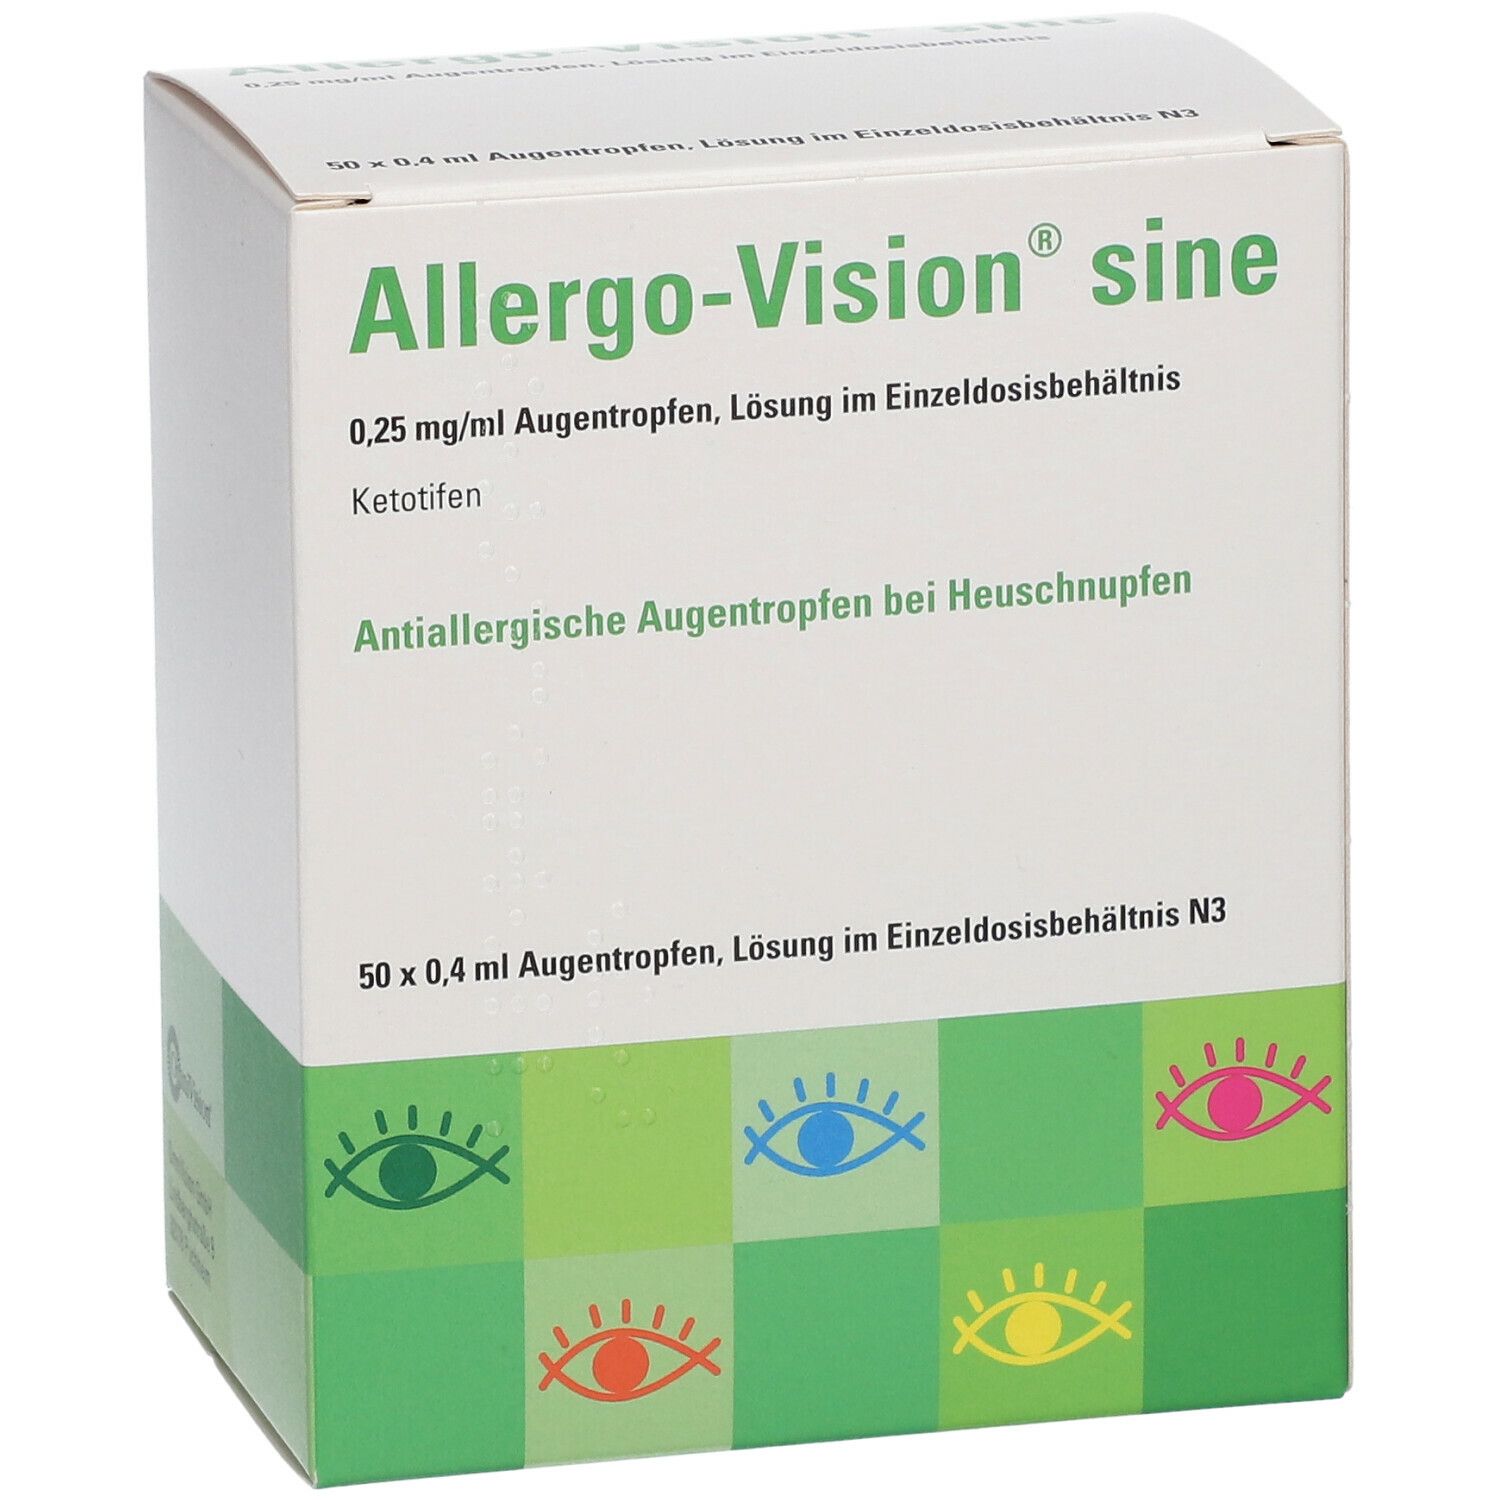 Allergo-Vision® sine 0,25mg/ml im Einzeldosisbehätnis